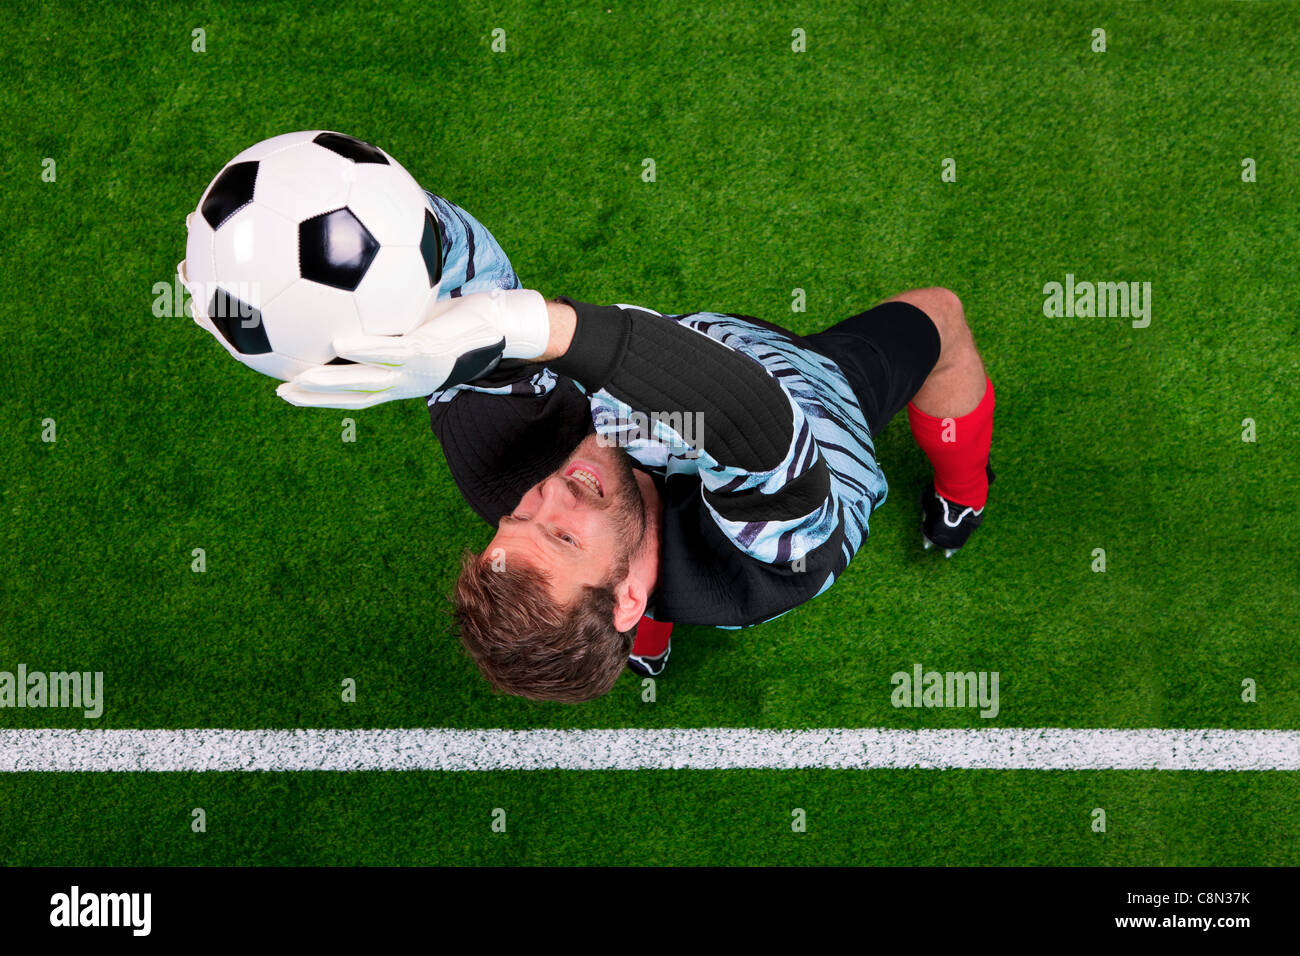 Fotografía aérea de un portero de fútbol saltar en el aire, guardando la pelota en la línea. Punto de enfoque está en su rostro. Foto de stock